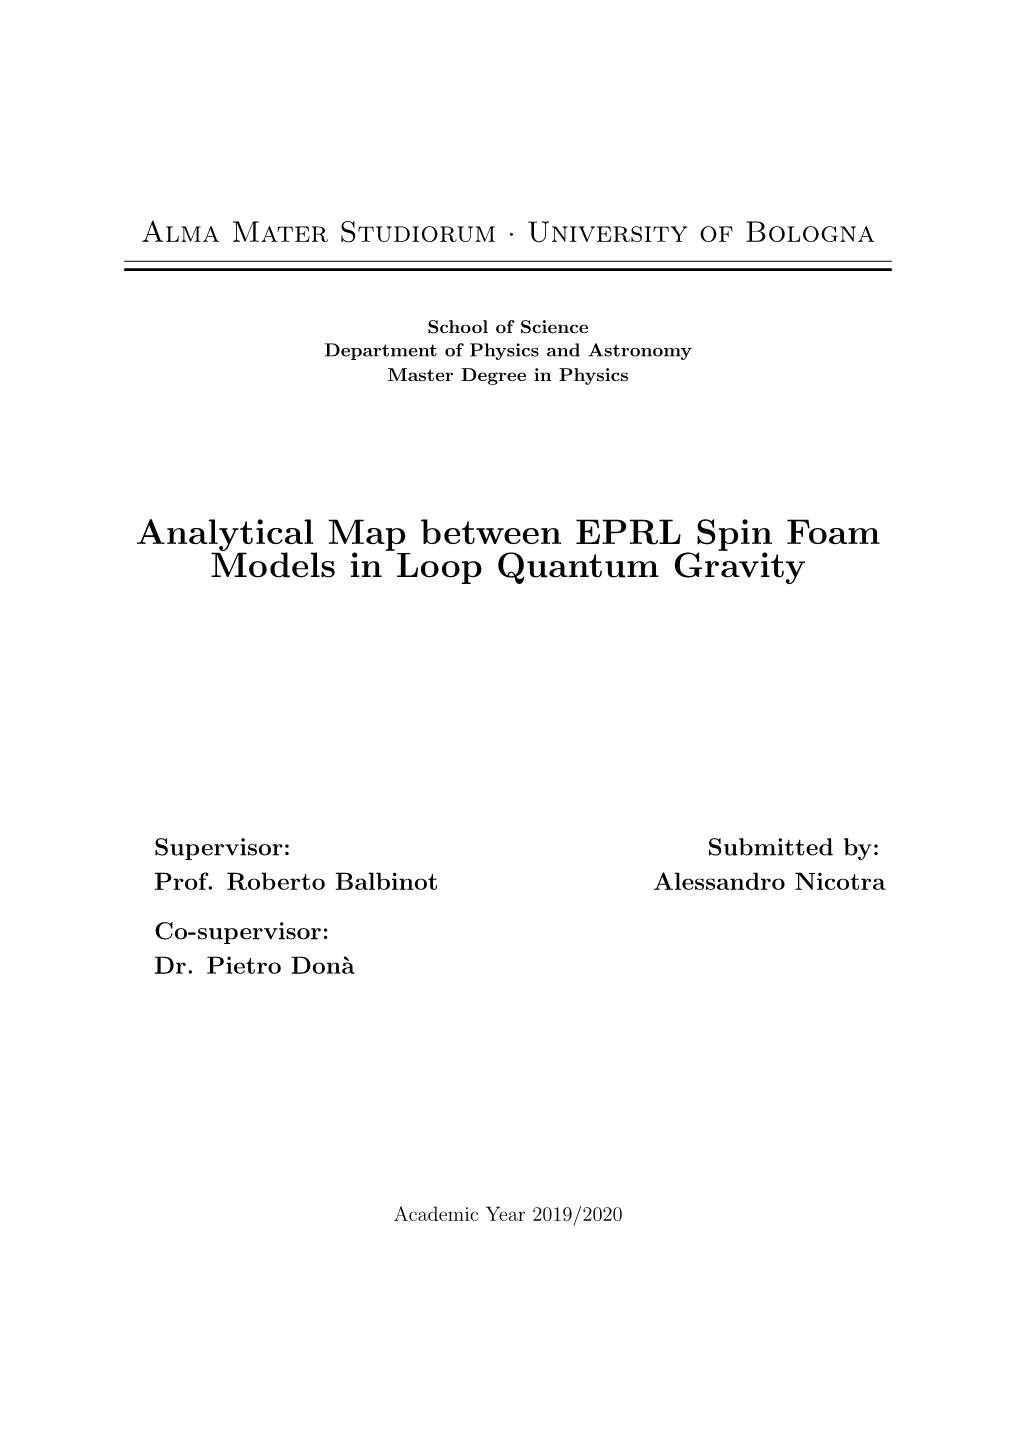 Analytical Map Between EPRL Spin Foam Models in Loop Quantum Gravity